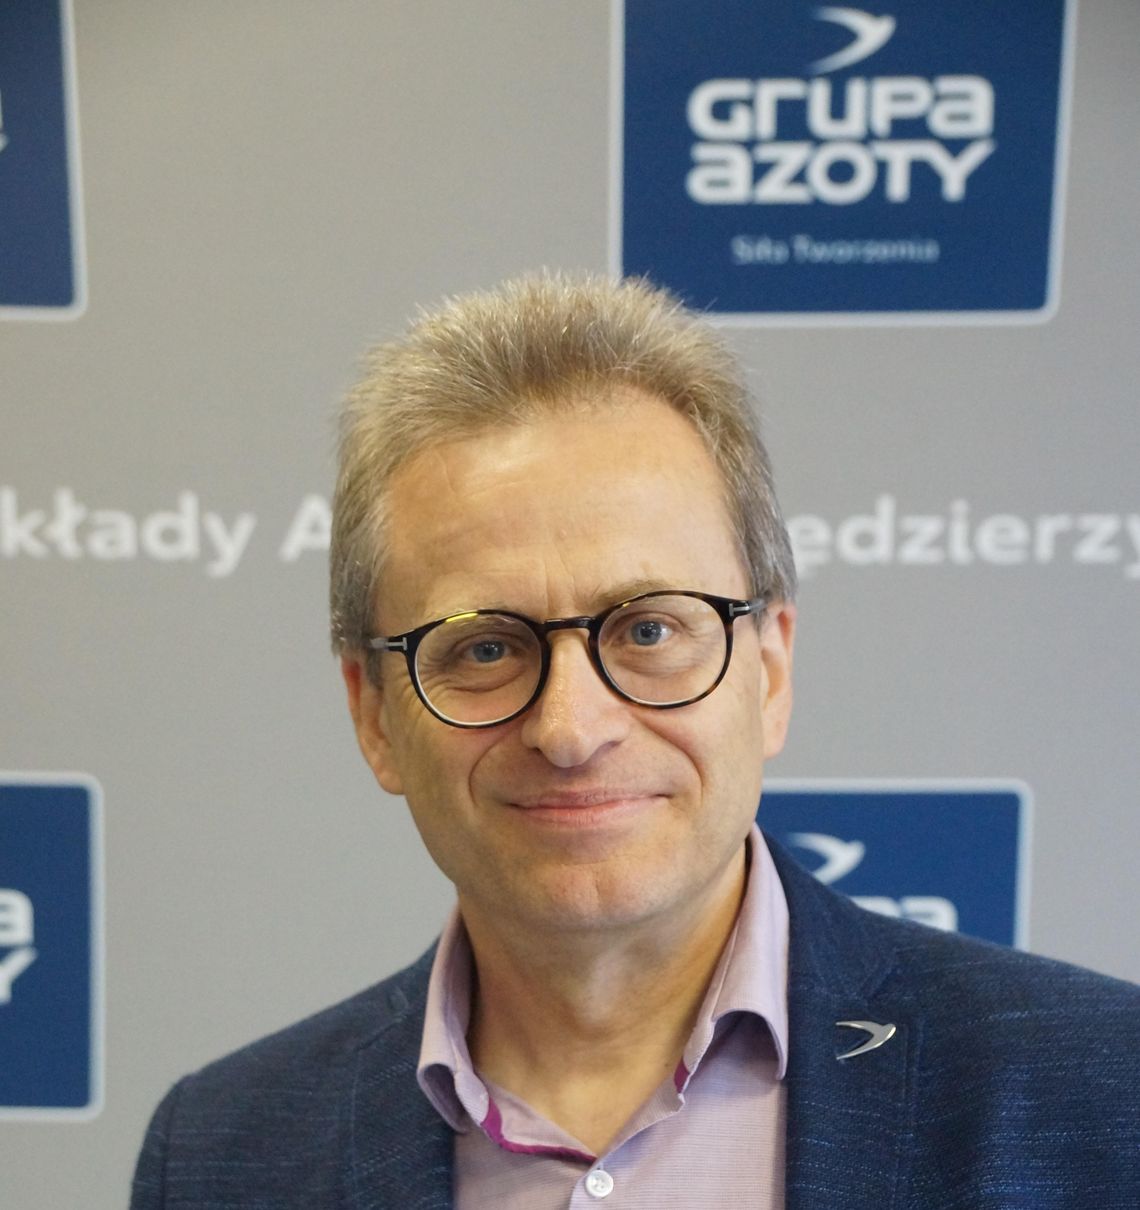 Rozmowa z dr. Wojciechem Wardackim, prezesem Grupy Azoty SA